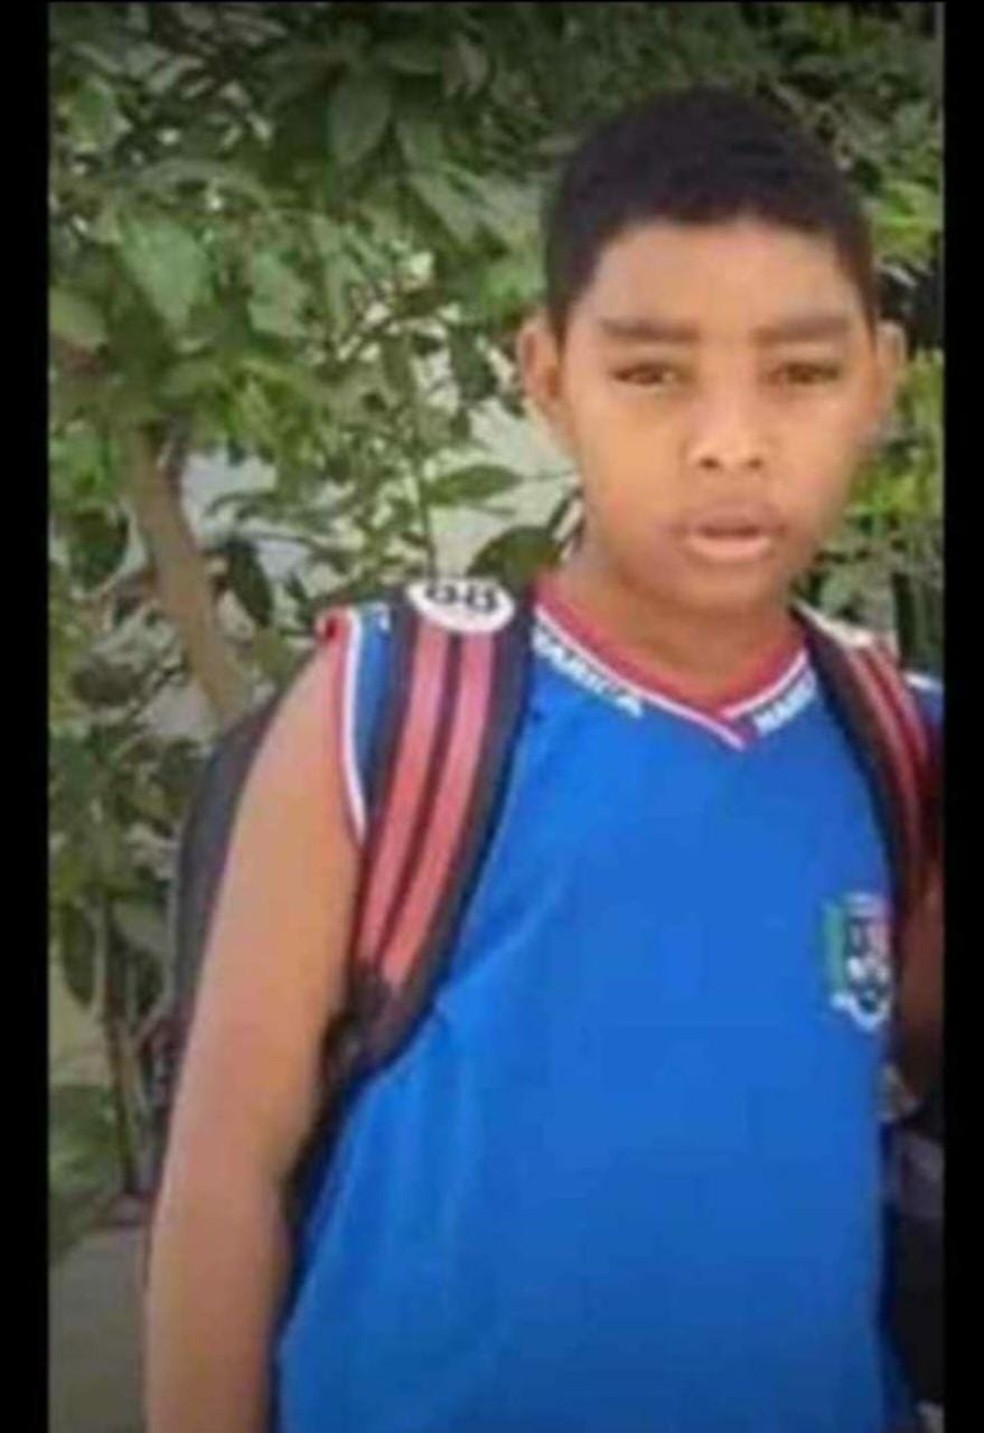 Djalma Azevedo Clemente, de 10 anos, ia para a escola quando foi baleado e morreu, em Maricá — Foto: Arquivo